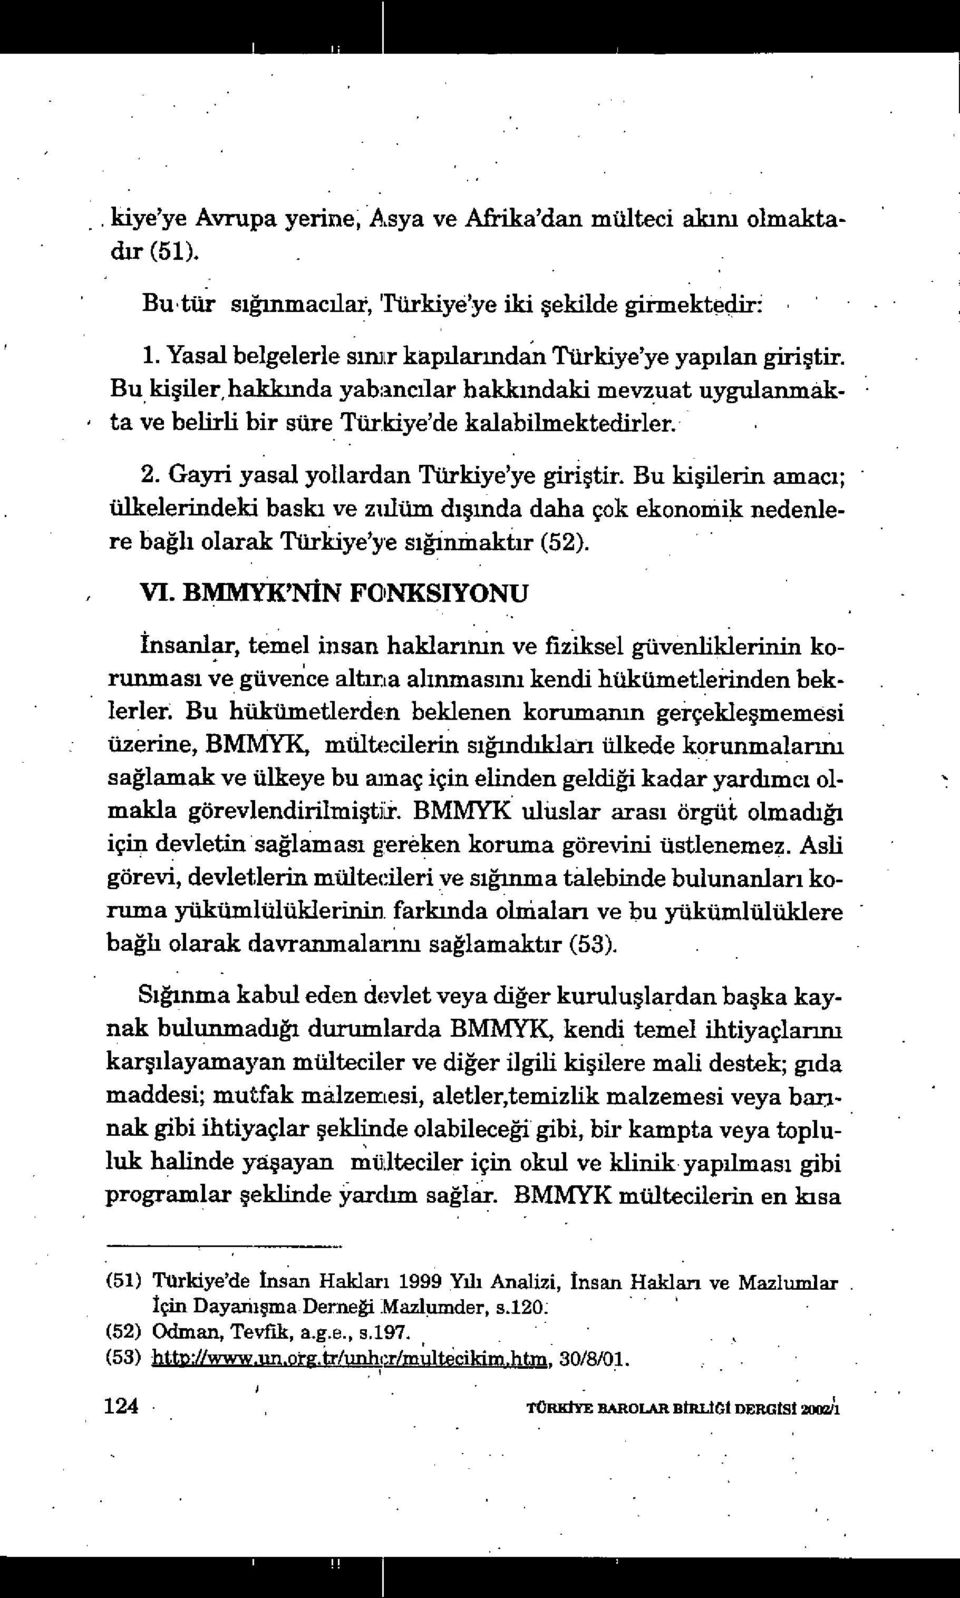 Bu ki şilerin amacı; ülkelerindeki baskı ve zulüm dışı nda daha çok ekonomik nedenlere bağh olarak Türkiye'ye s ığinınaktır (52). VI.